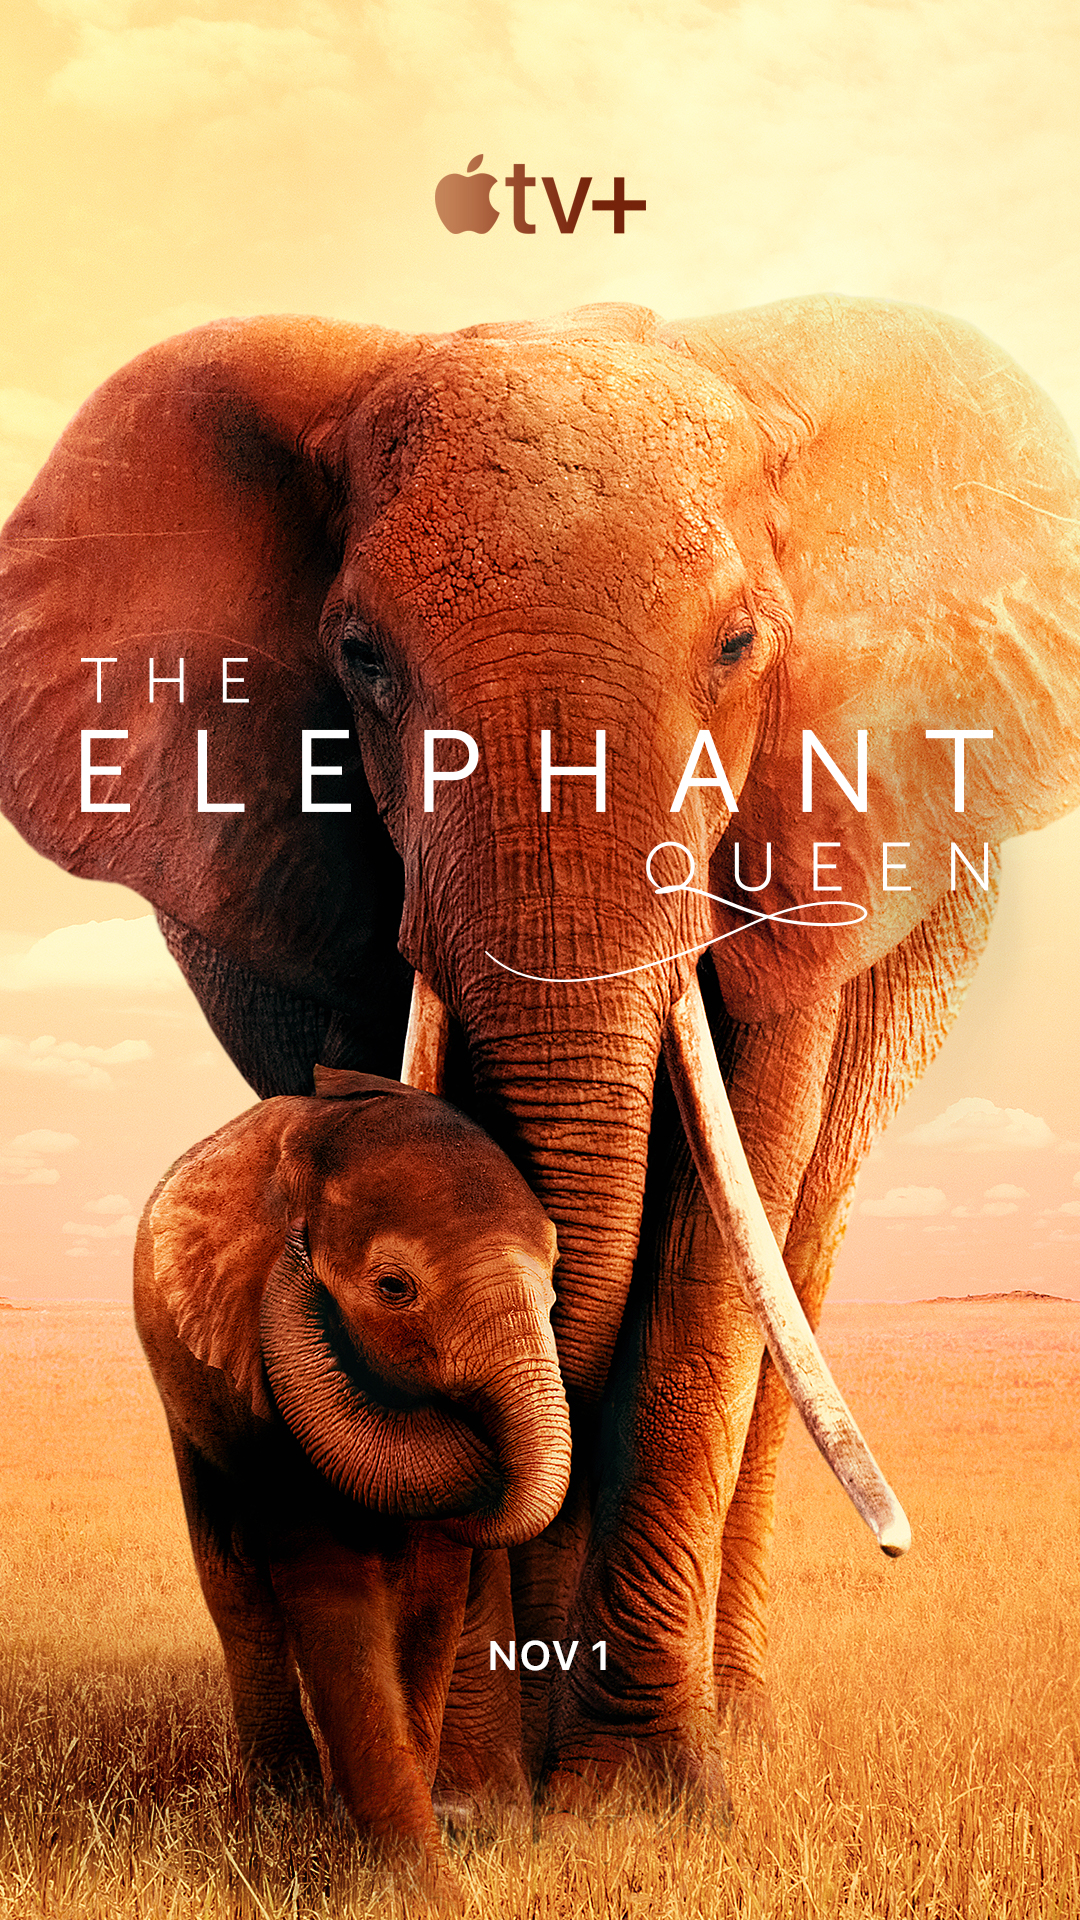 ดูหนังออนไลน์ฟรี The Elephant Queen (2019) อัศจรรย์ราชินีแห่งช้าง